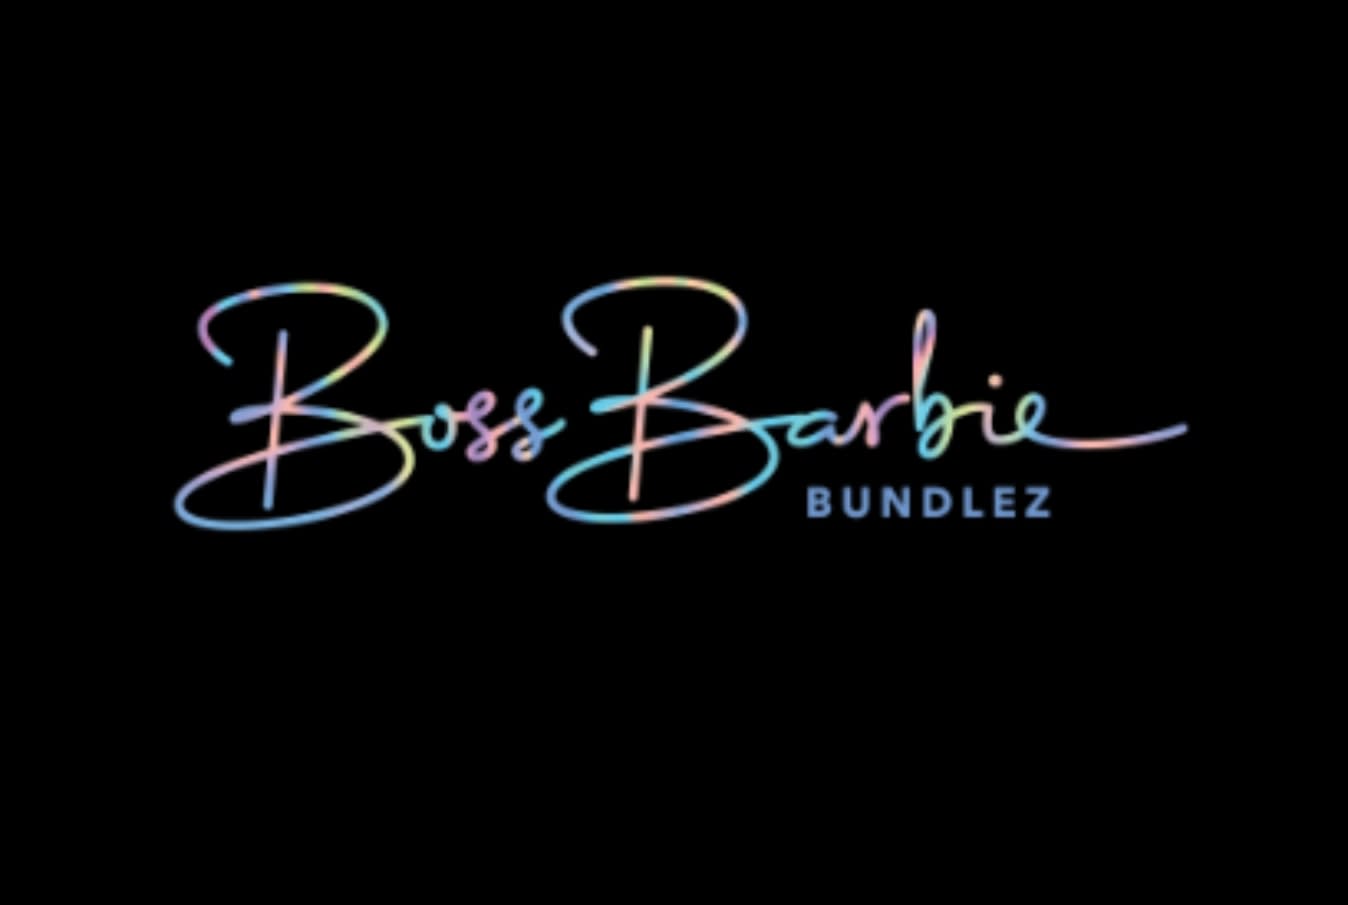 Boss Barbie Bundlez